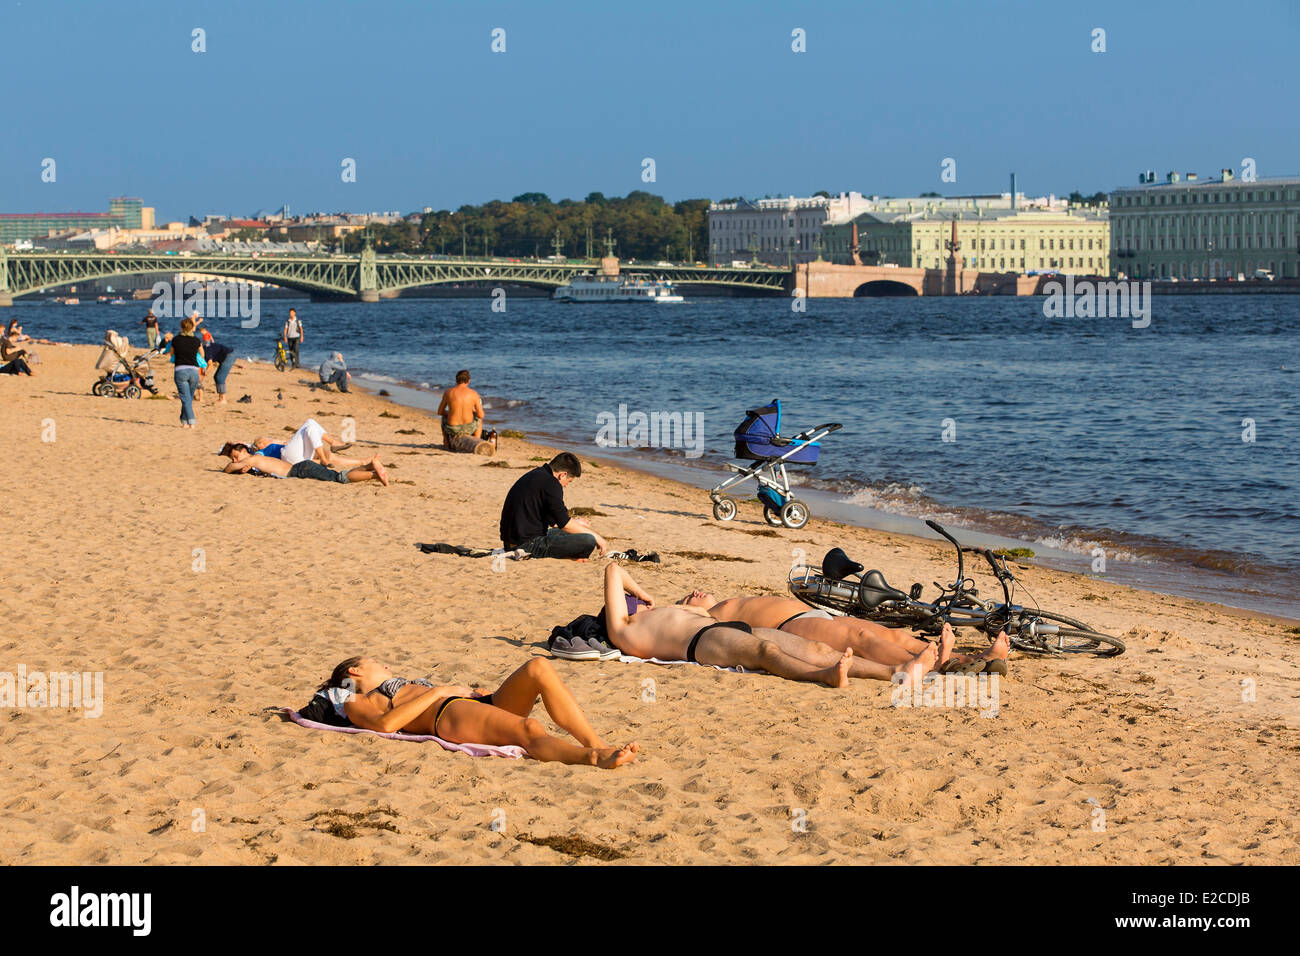 La Russie, Saint-Pétersbourg, inscrite au Patrimoine Mondial de l'UNESCO, un bain de soleil le long de la rivière Neva Banque D'Images